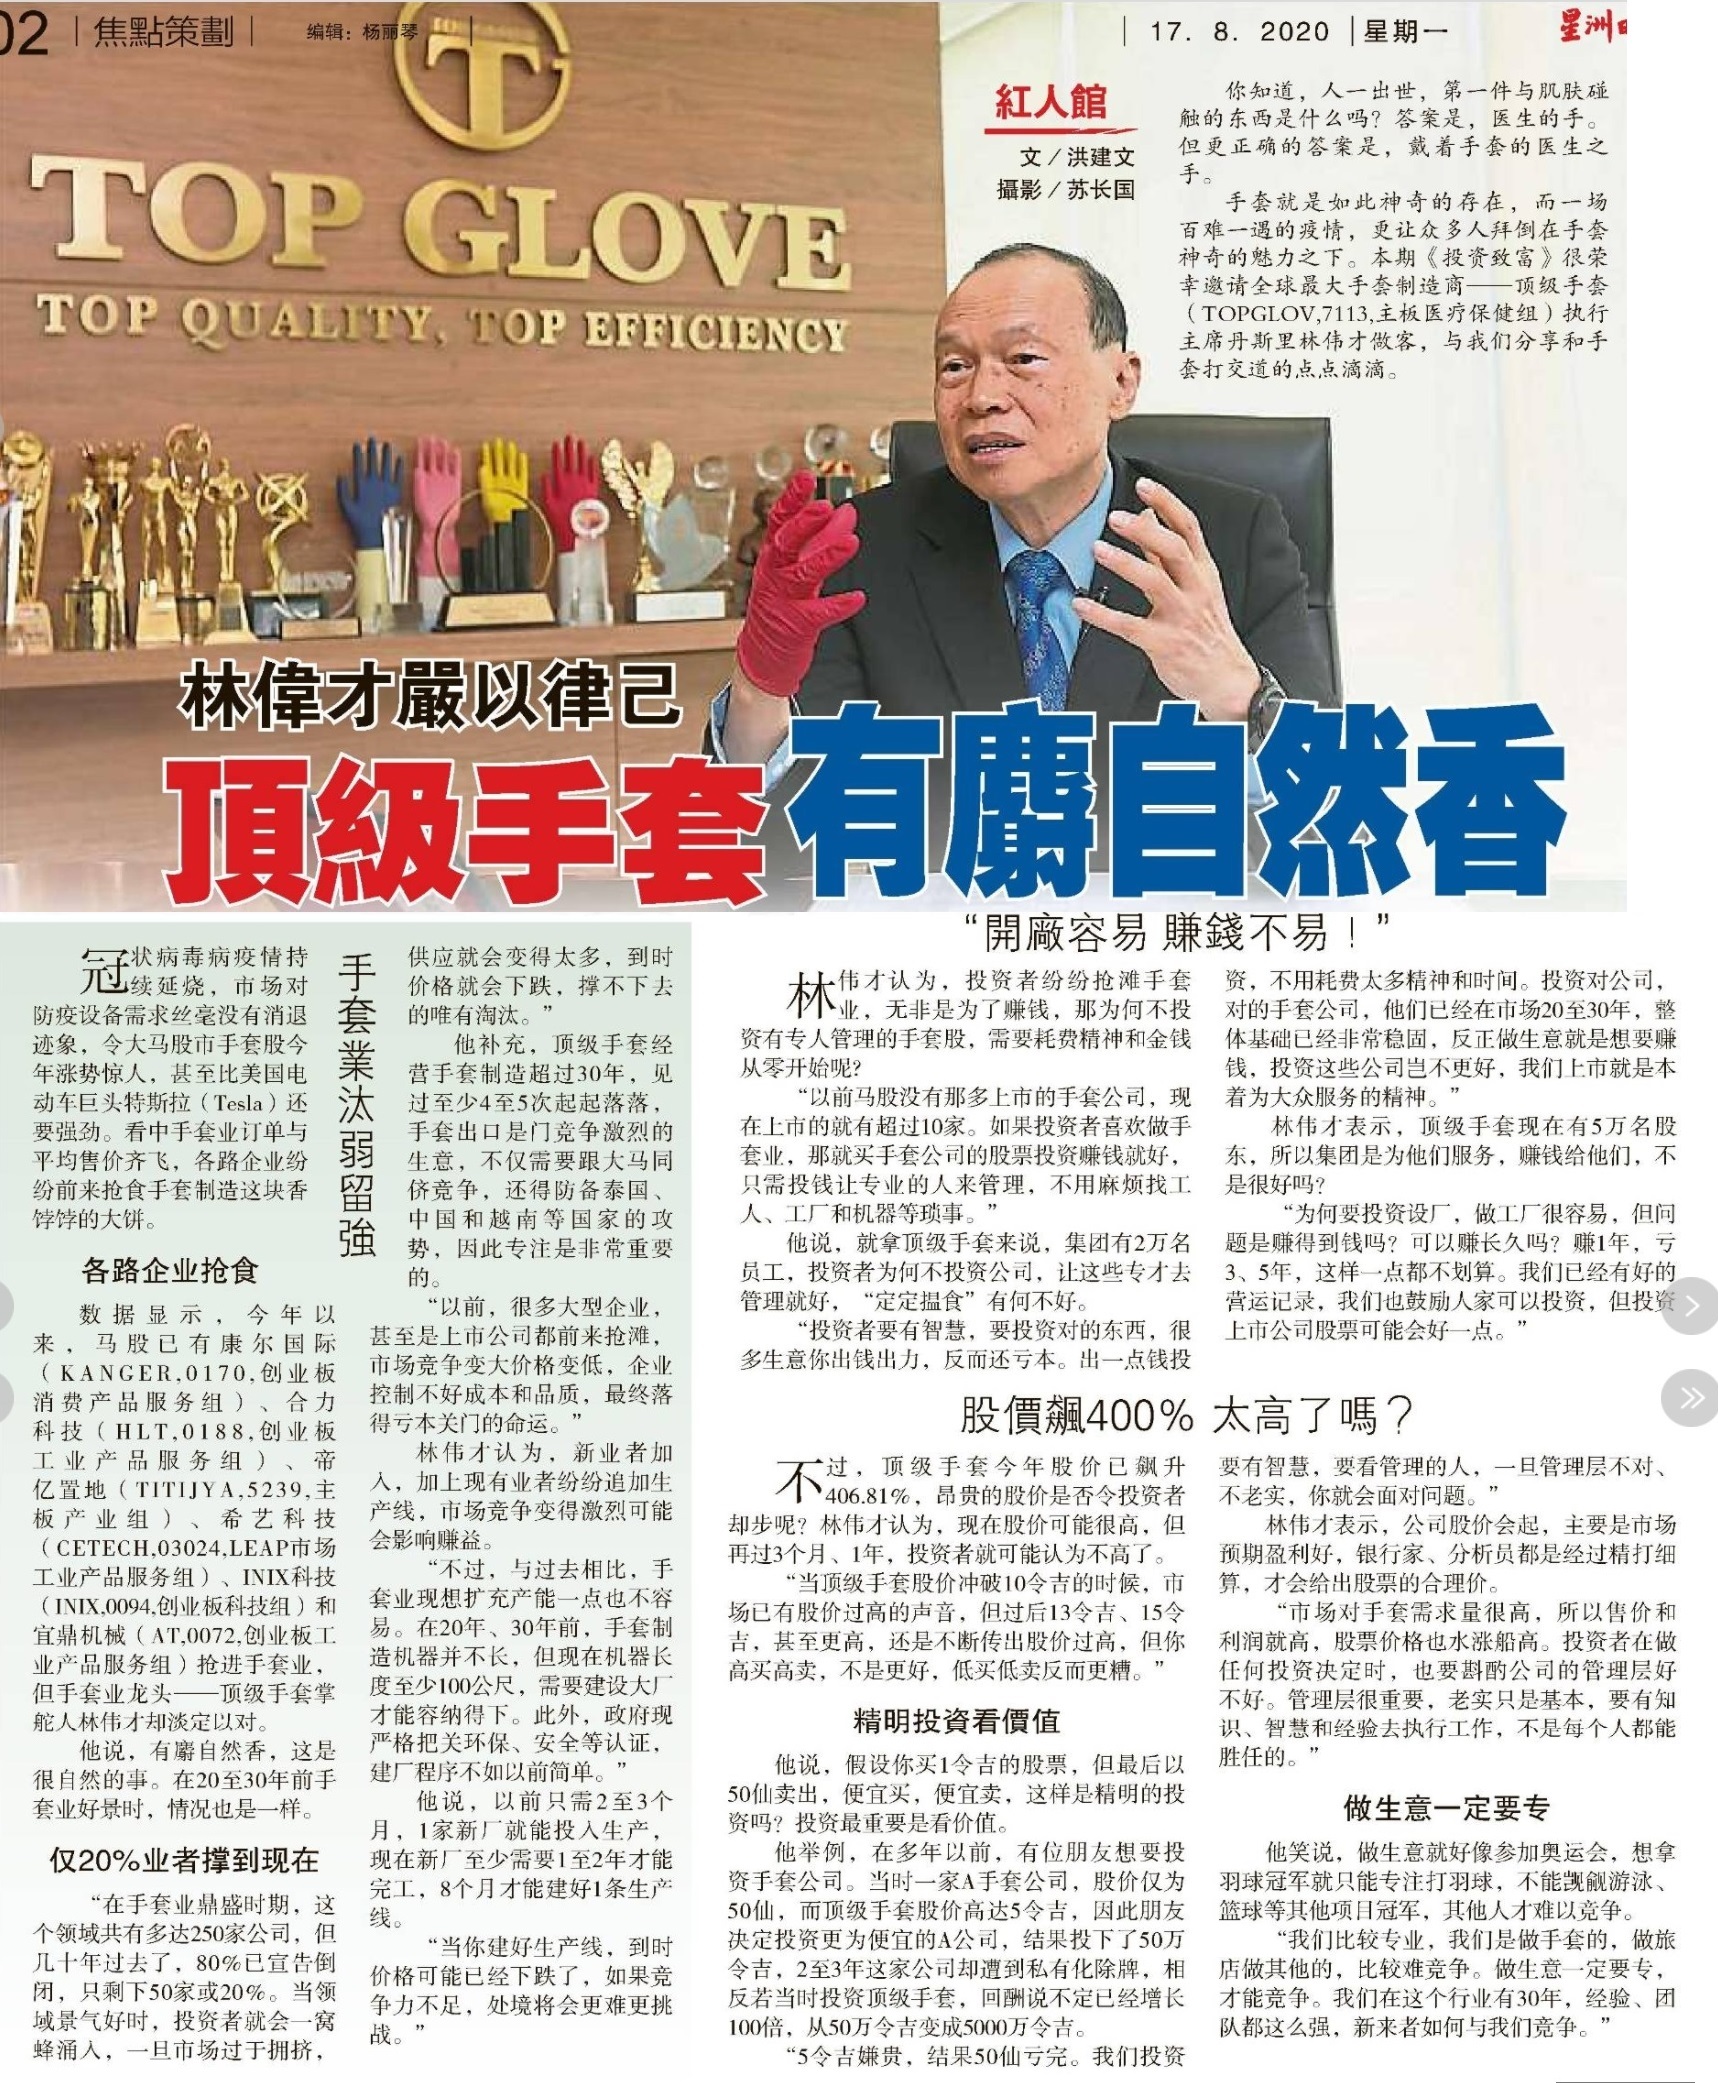 手套 顶级 顶级手套集团，香港IPO计划获股东批准，预计明年首季上市_腾讯新闻